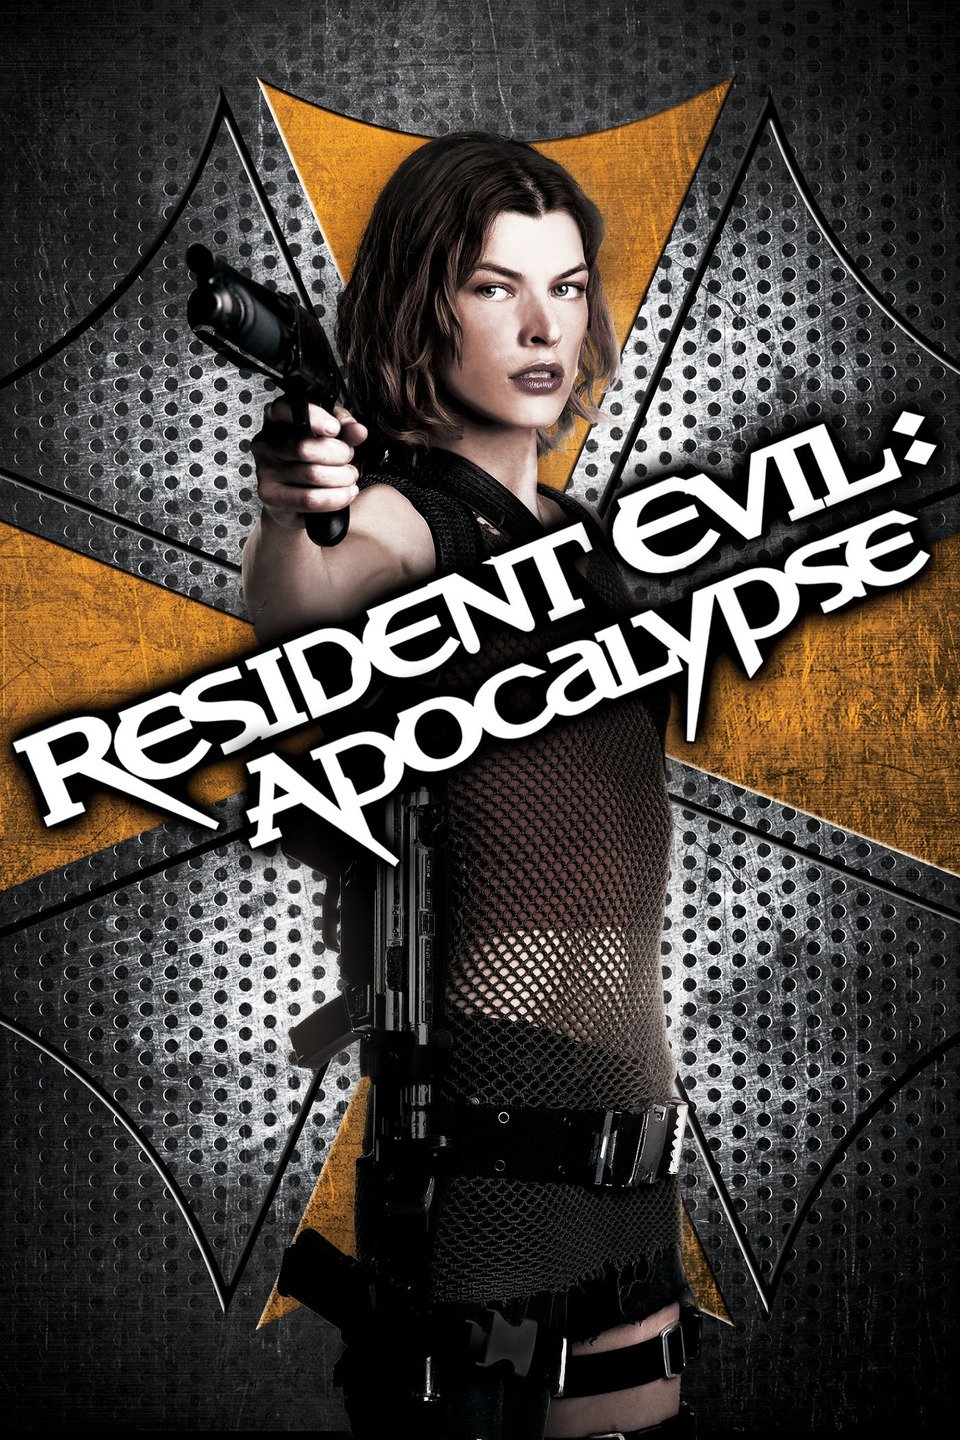 [MINI-HD] Resident Evil: Apocalypse (2004) ผีชีวะ 2 ผ่าวิกฤตไวรัสสยอง [1080p] [เสียงไทย DTS + อังกฤษ DTS] [BrRip.DTS.x264] [บรรยายไทย+อังกฤษ] [เสียงไทย + ซับไทย]